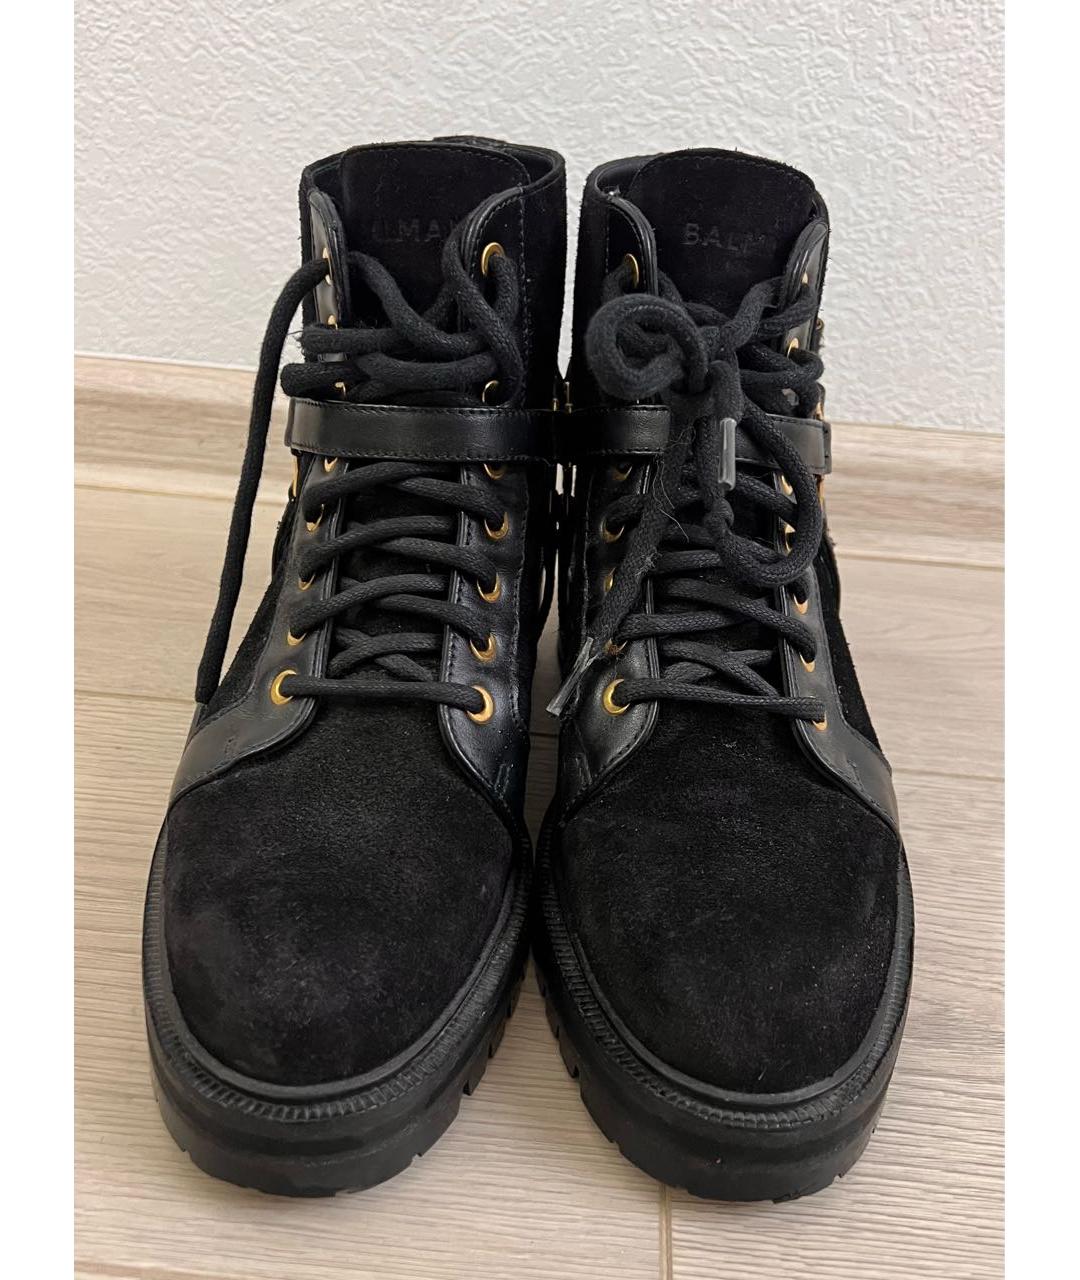 BALMAIN Черные замшевые ботинки, фото 2